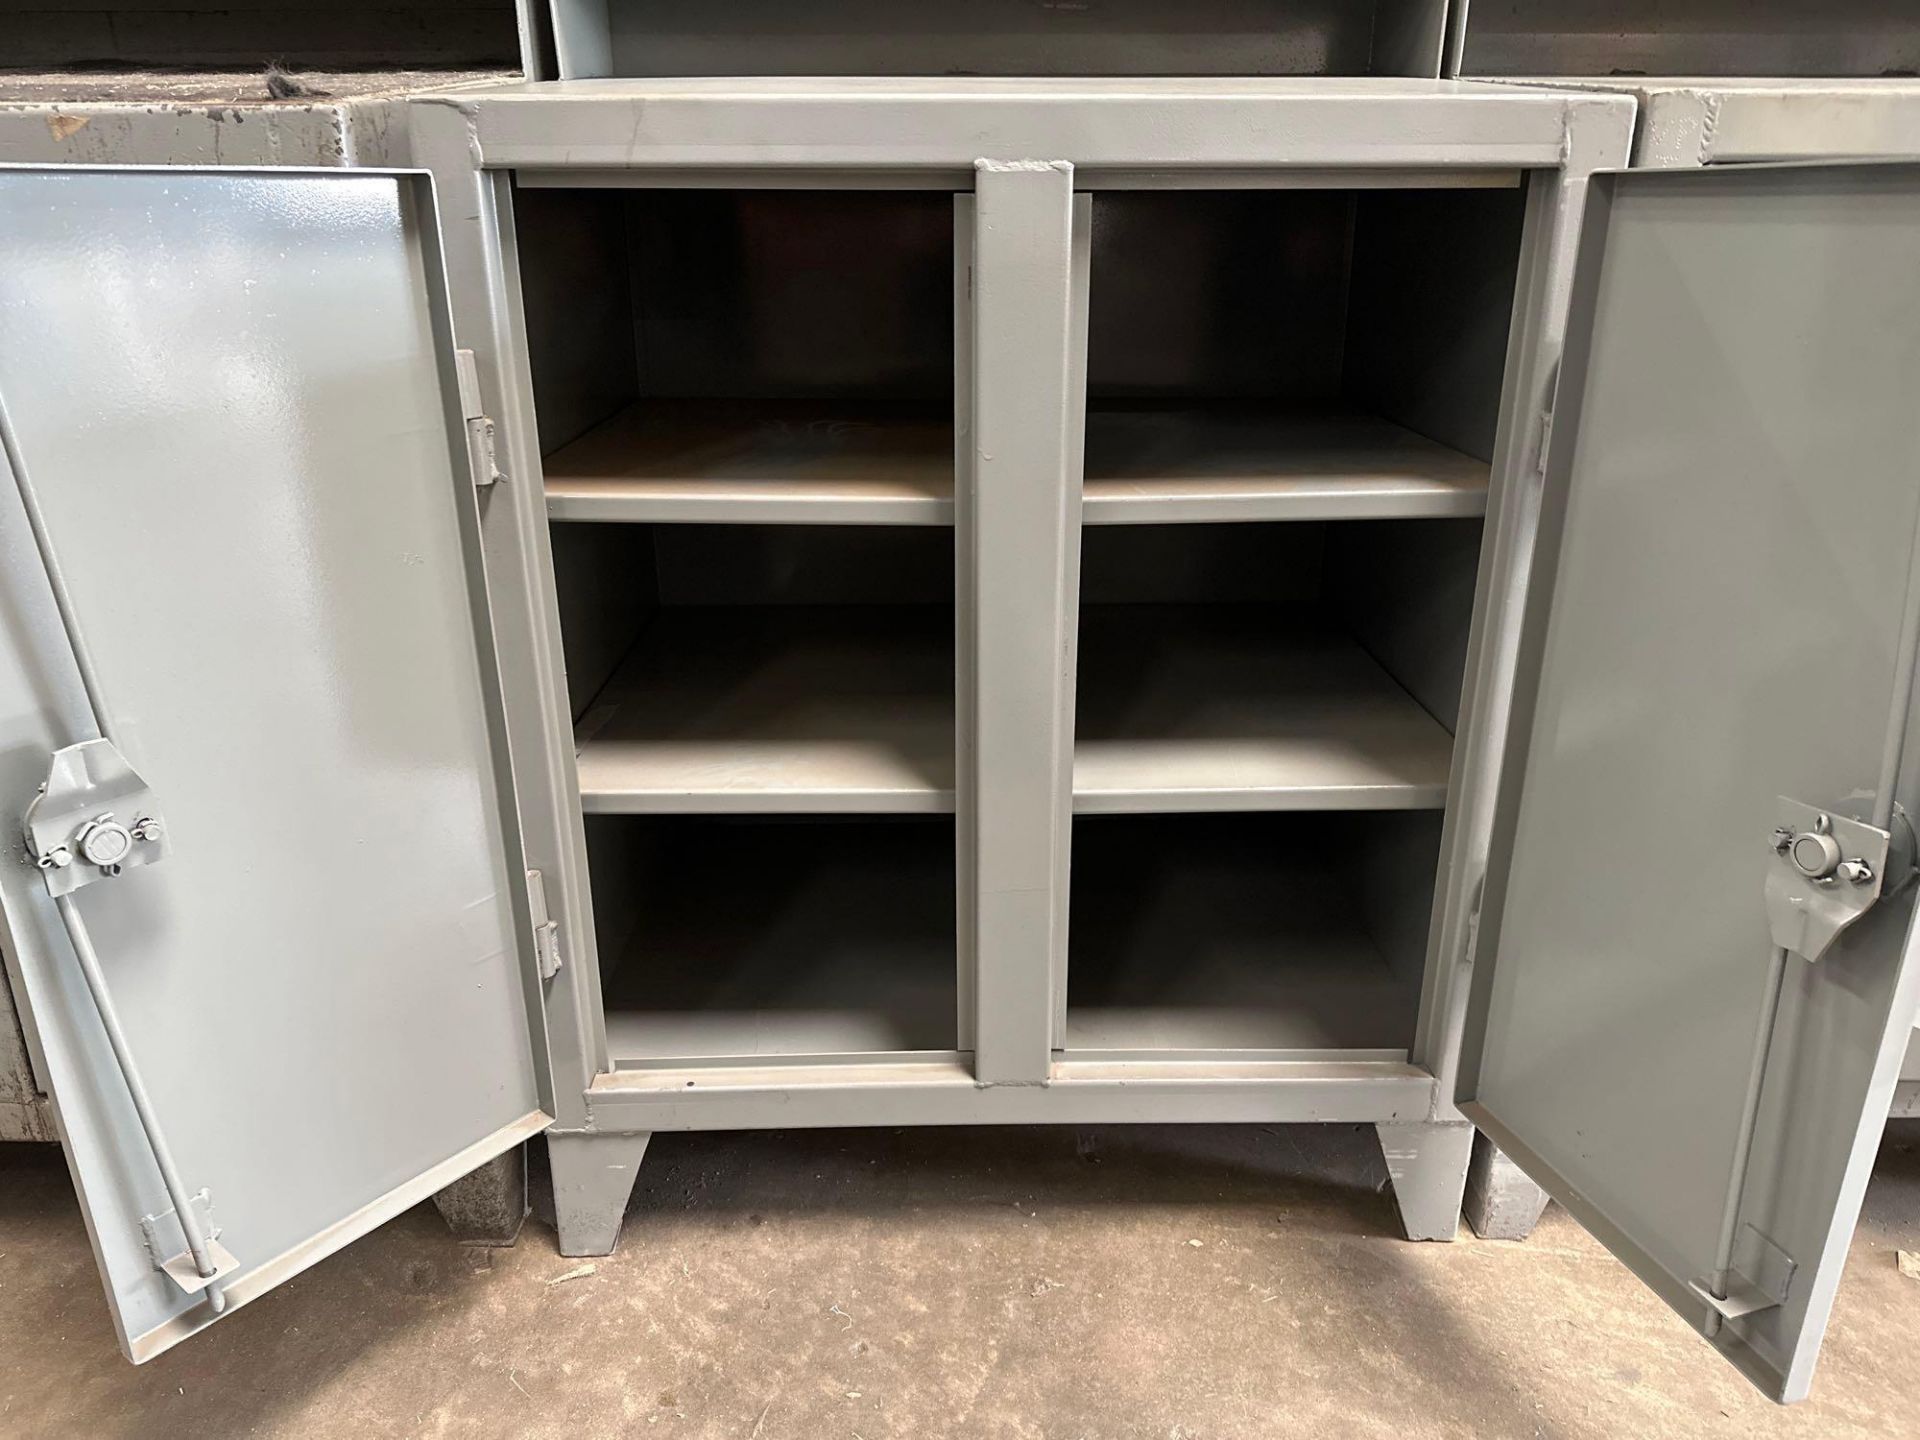 44”x36”x28” Heavy Duty Steel Cabinet - Image 3 of 3